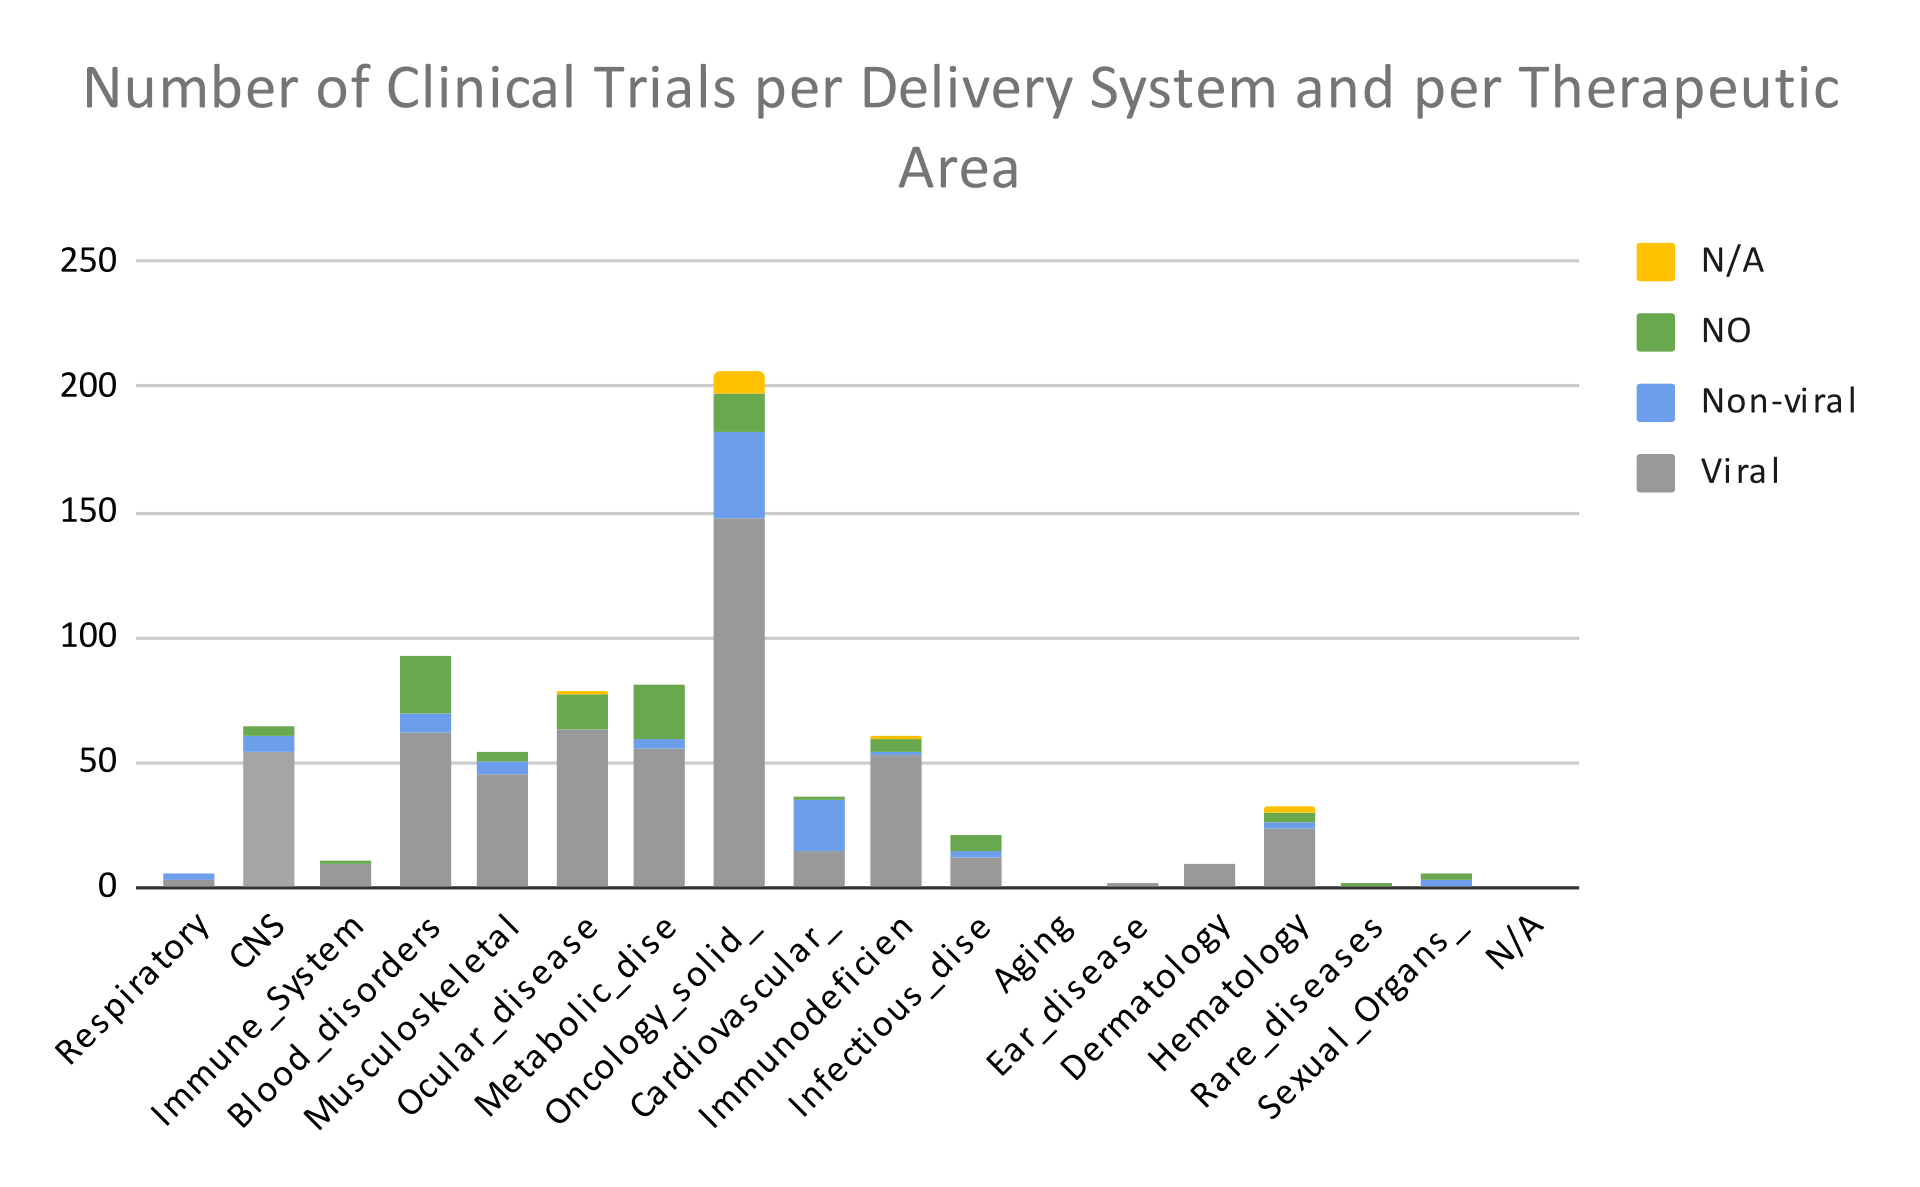 Delivery Systems per Therapeutic Area